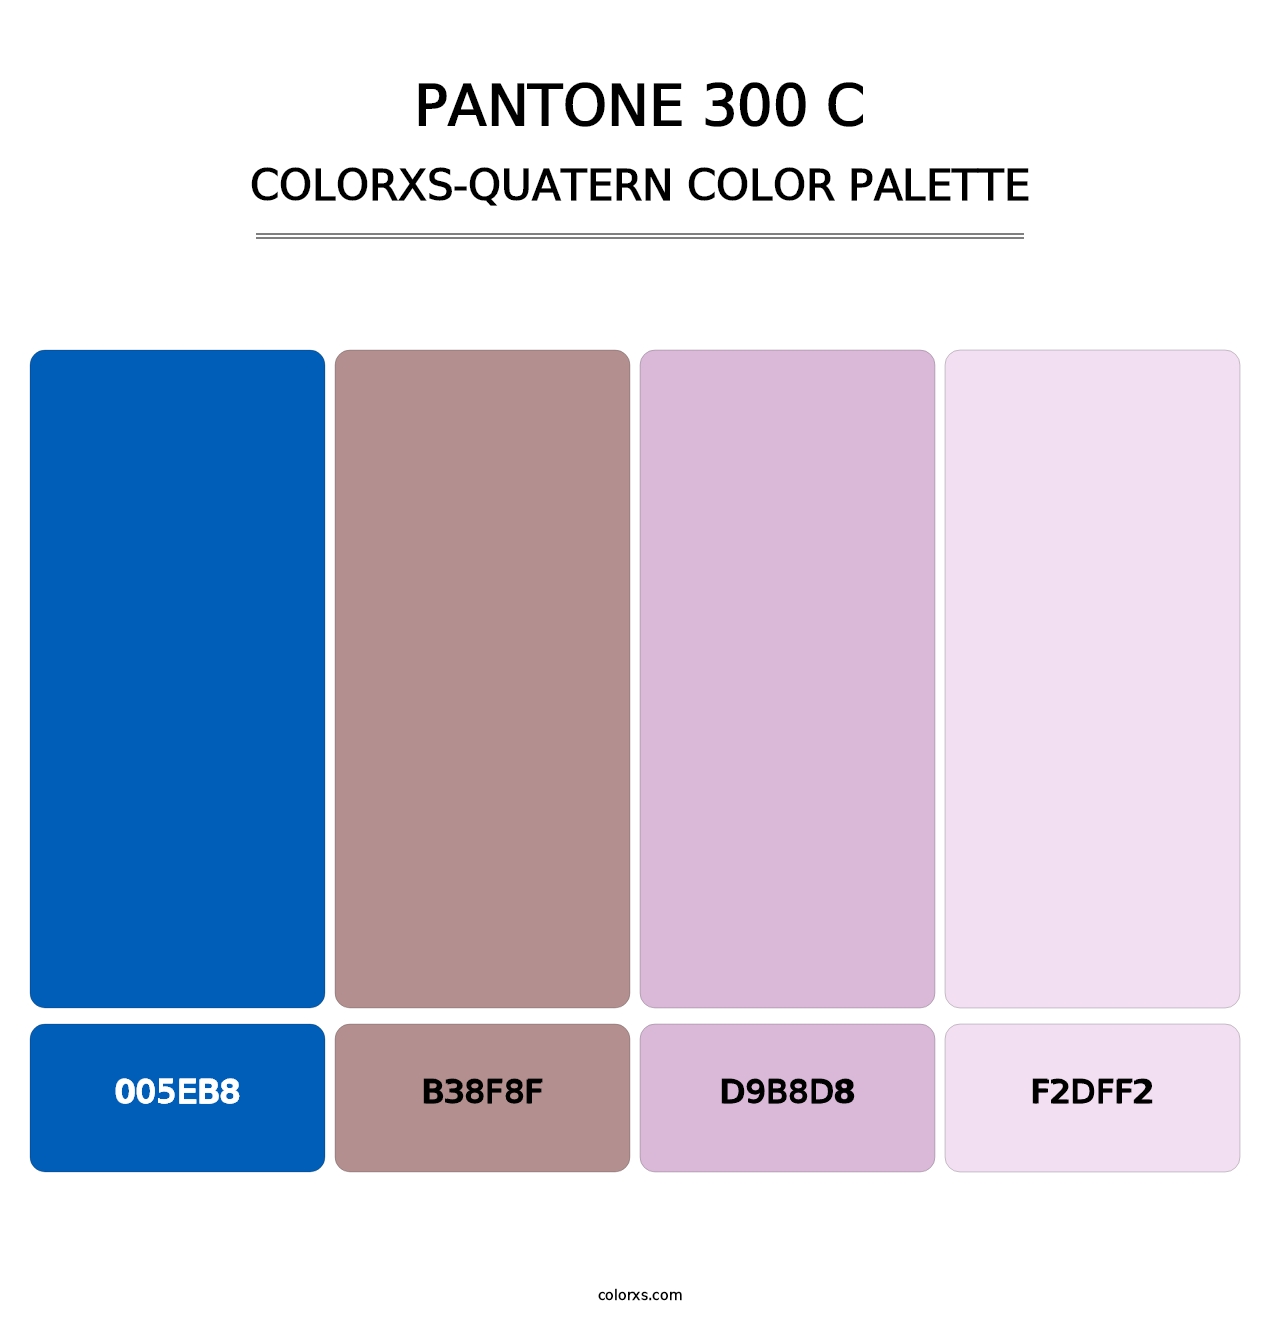 PANTONE 300 C - Colorxs Quatern Palette